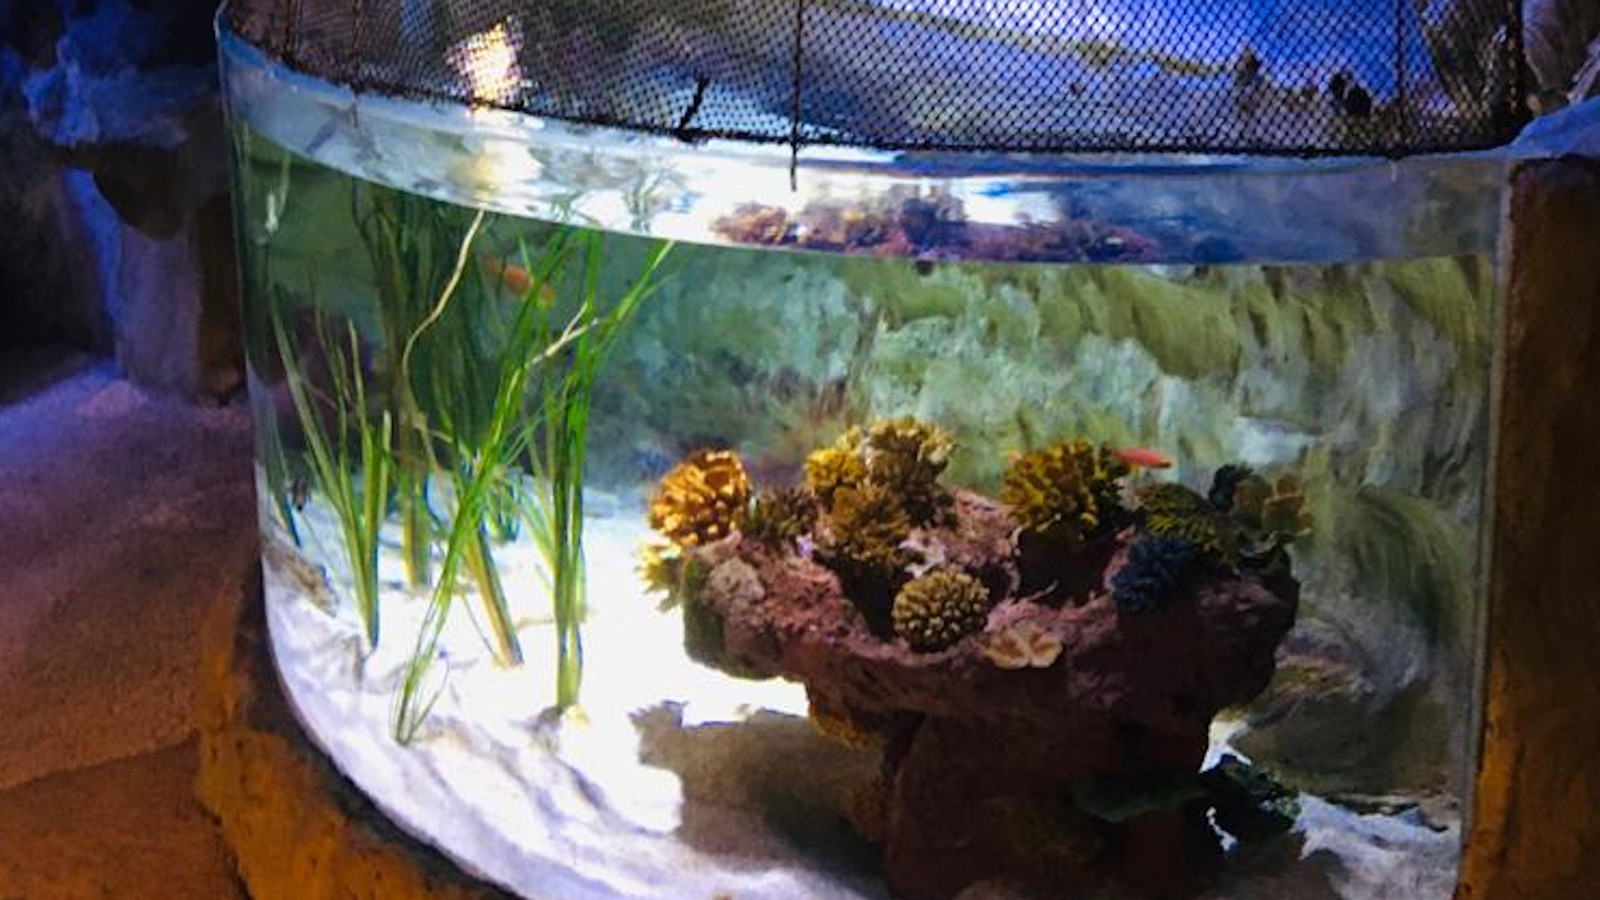 Kuvassa on pienessä akvaariossa ruskean kiven päällä ruskeita kasveja.